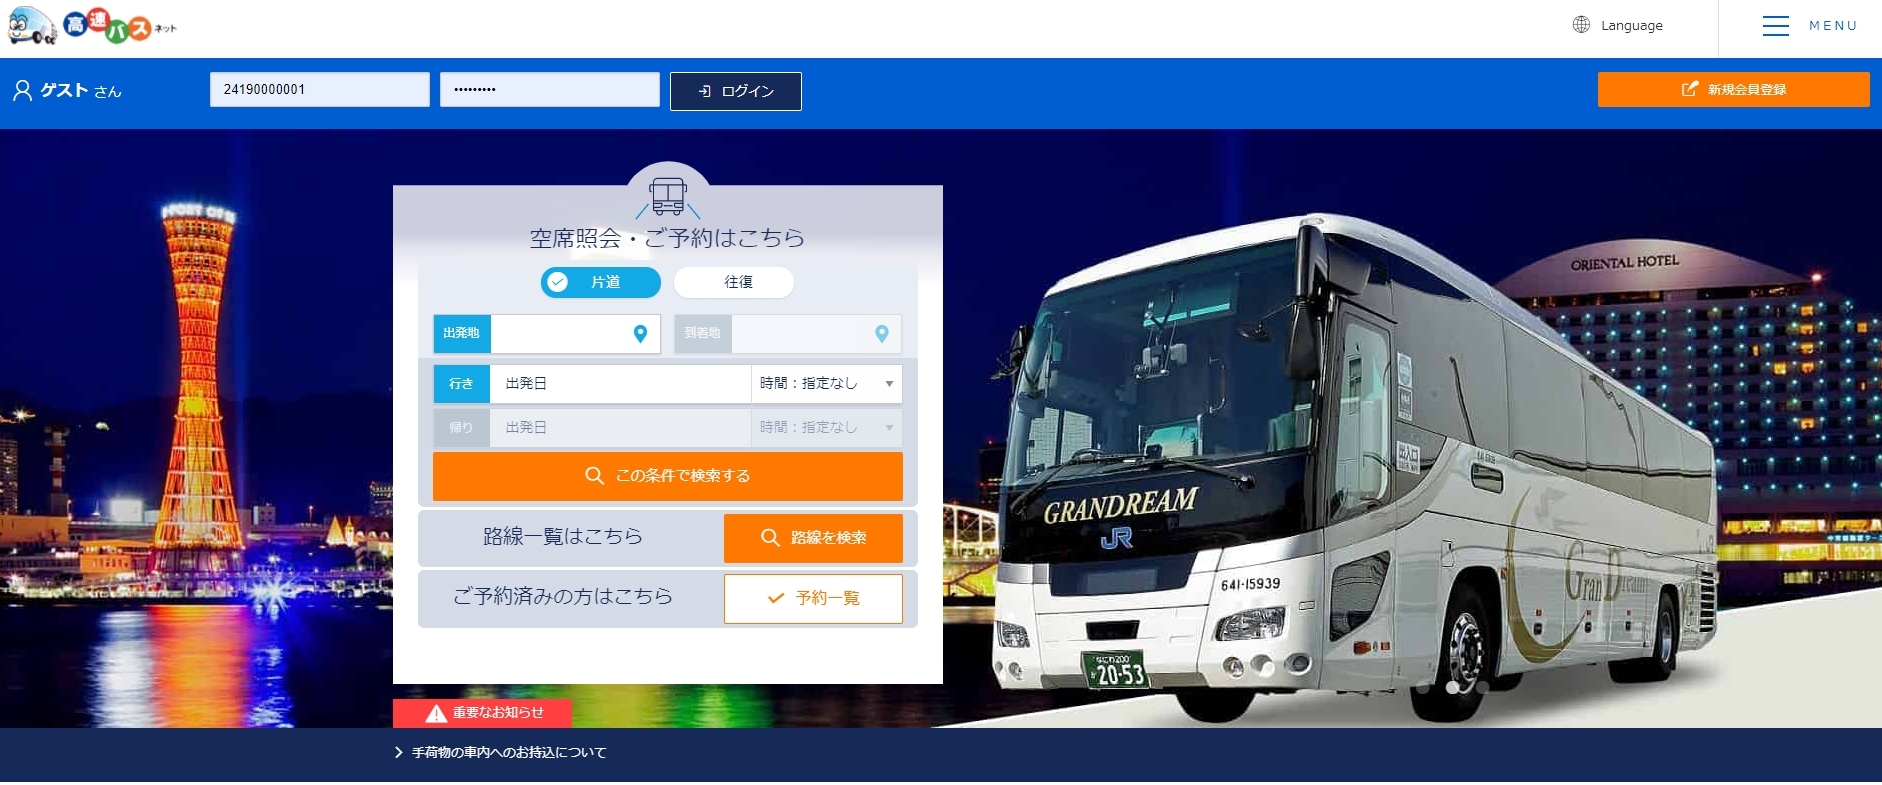 名古屋 横浜の全高速バスを網羅 予約前のお役立ちガイド ドットコラム